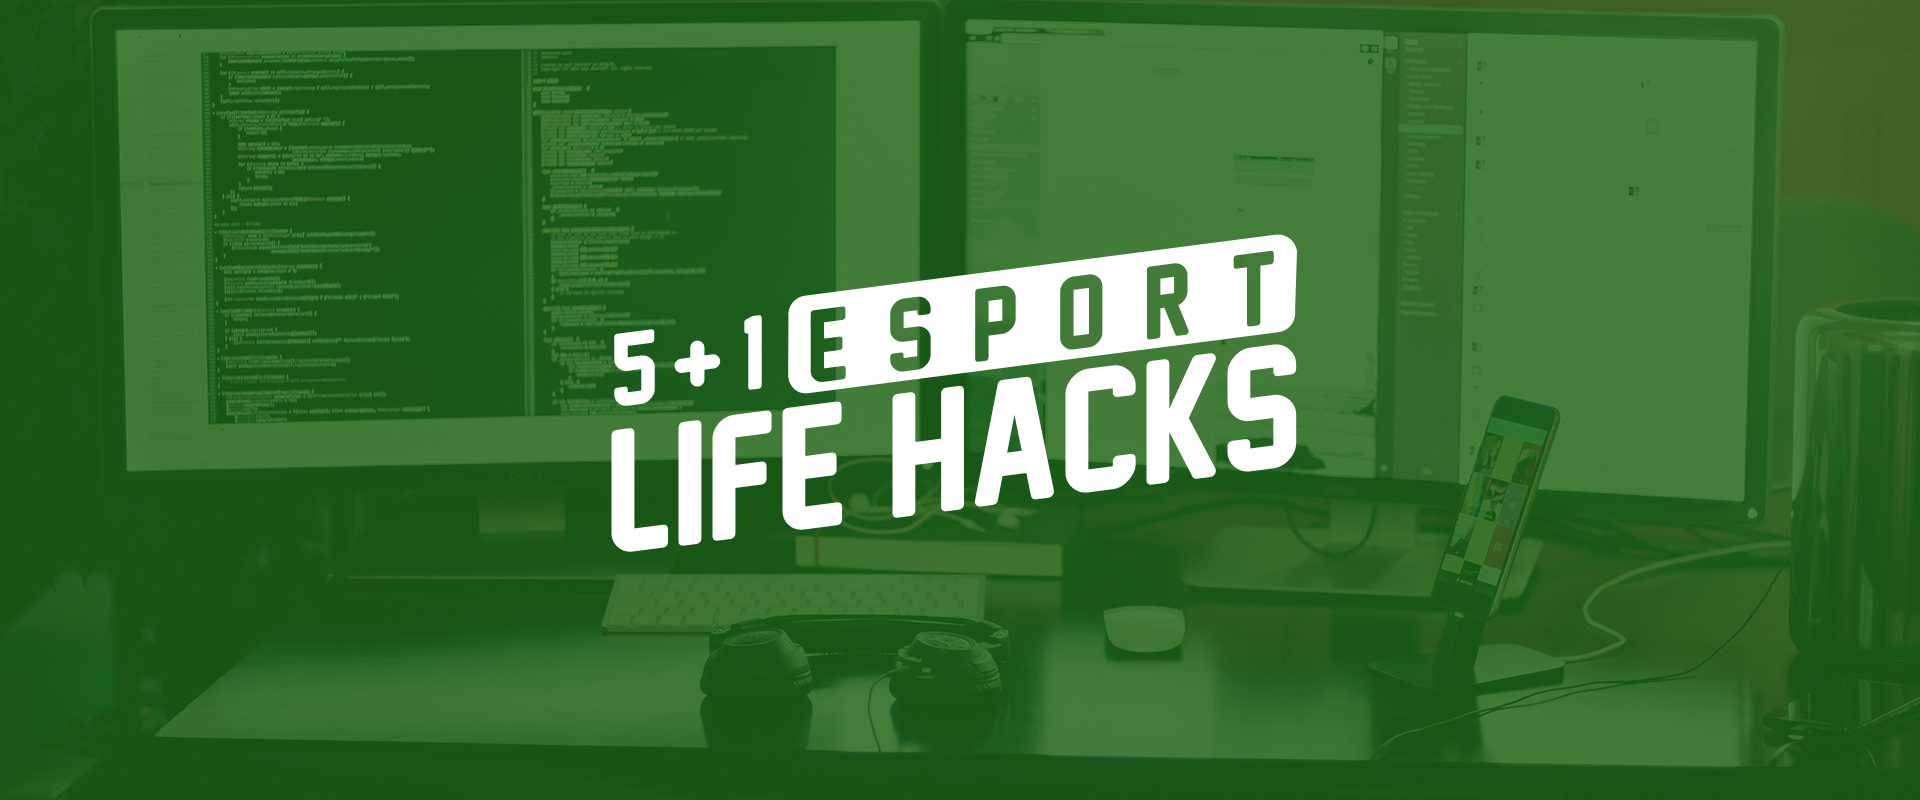 5+1 life hack, amit minden esport kedvelőnek ismernie kell!